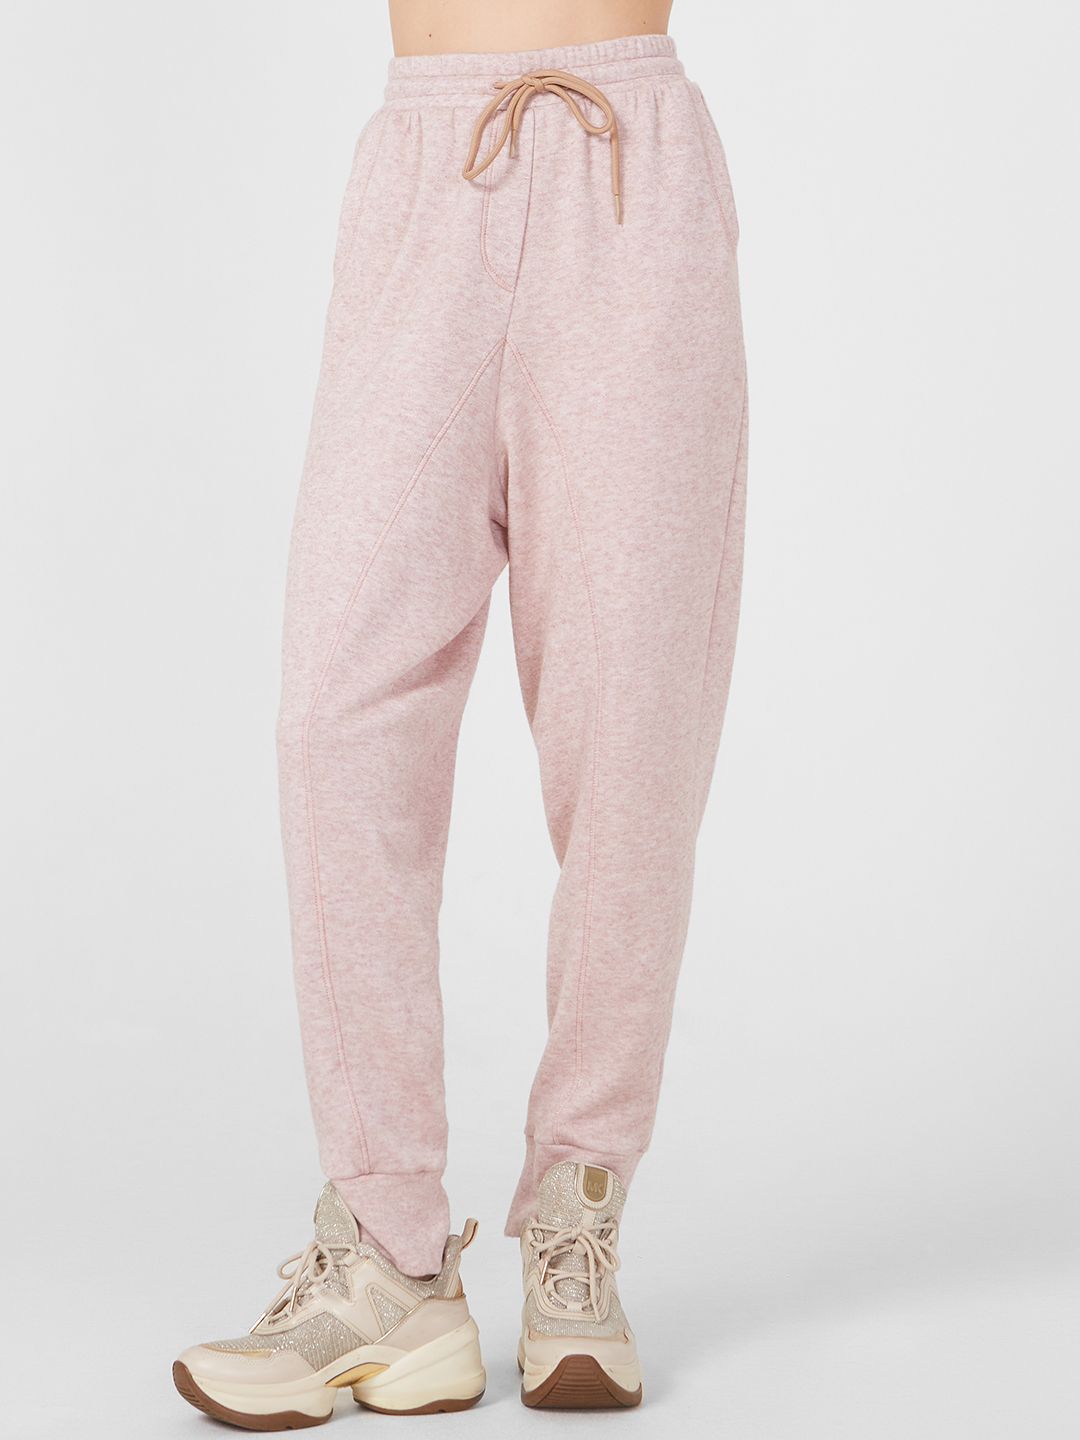 Спортивные брюки женские Lo 18232018 розовые 42 RU